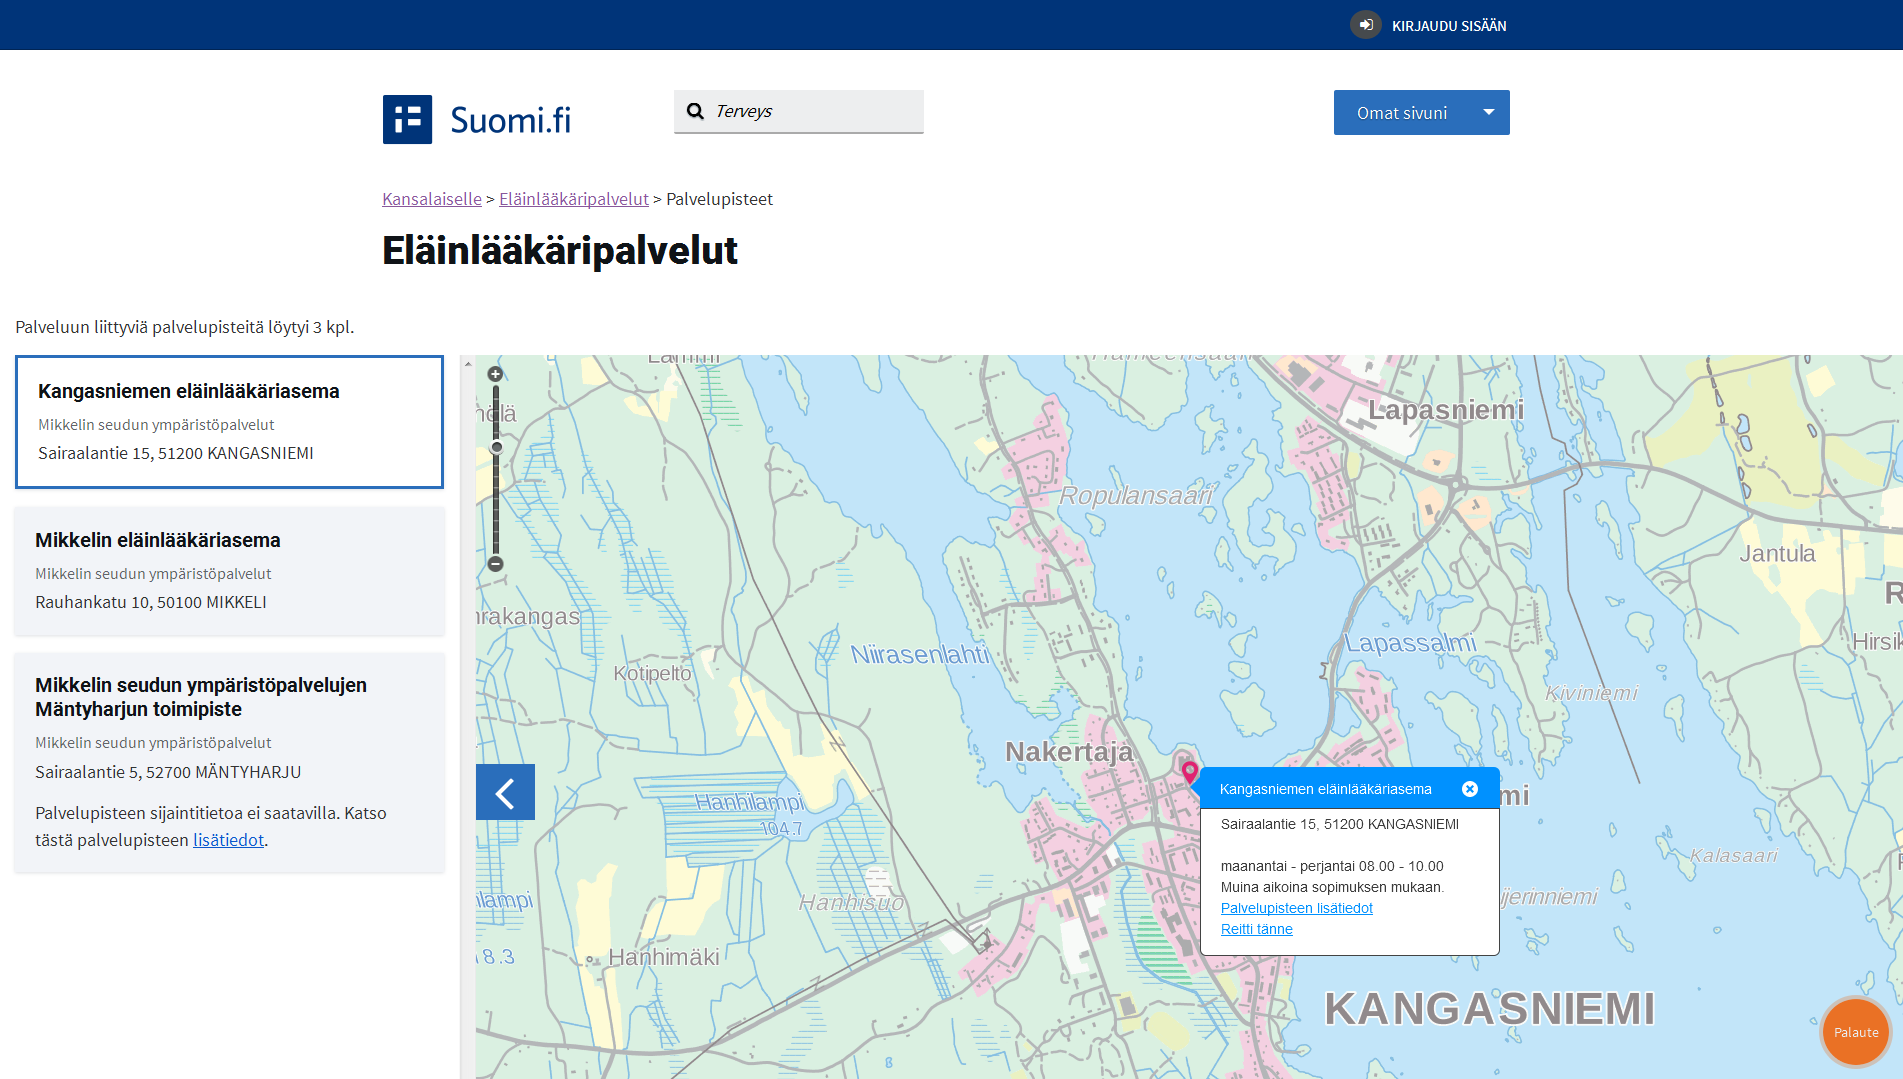 Palveluun liittyvät palvelupisteet Suomi.fi kartat (=hallinnon karttapalvelu) palvelupisteiden esittämiseen.